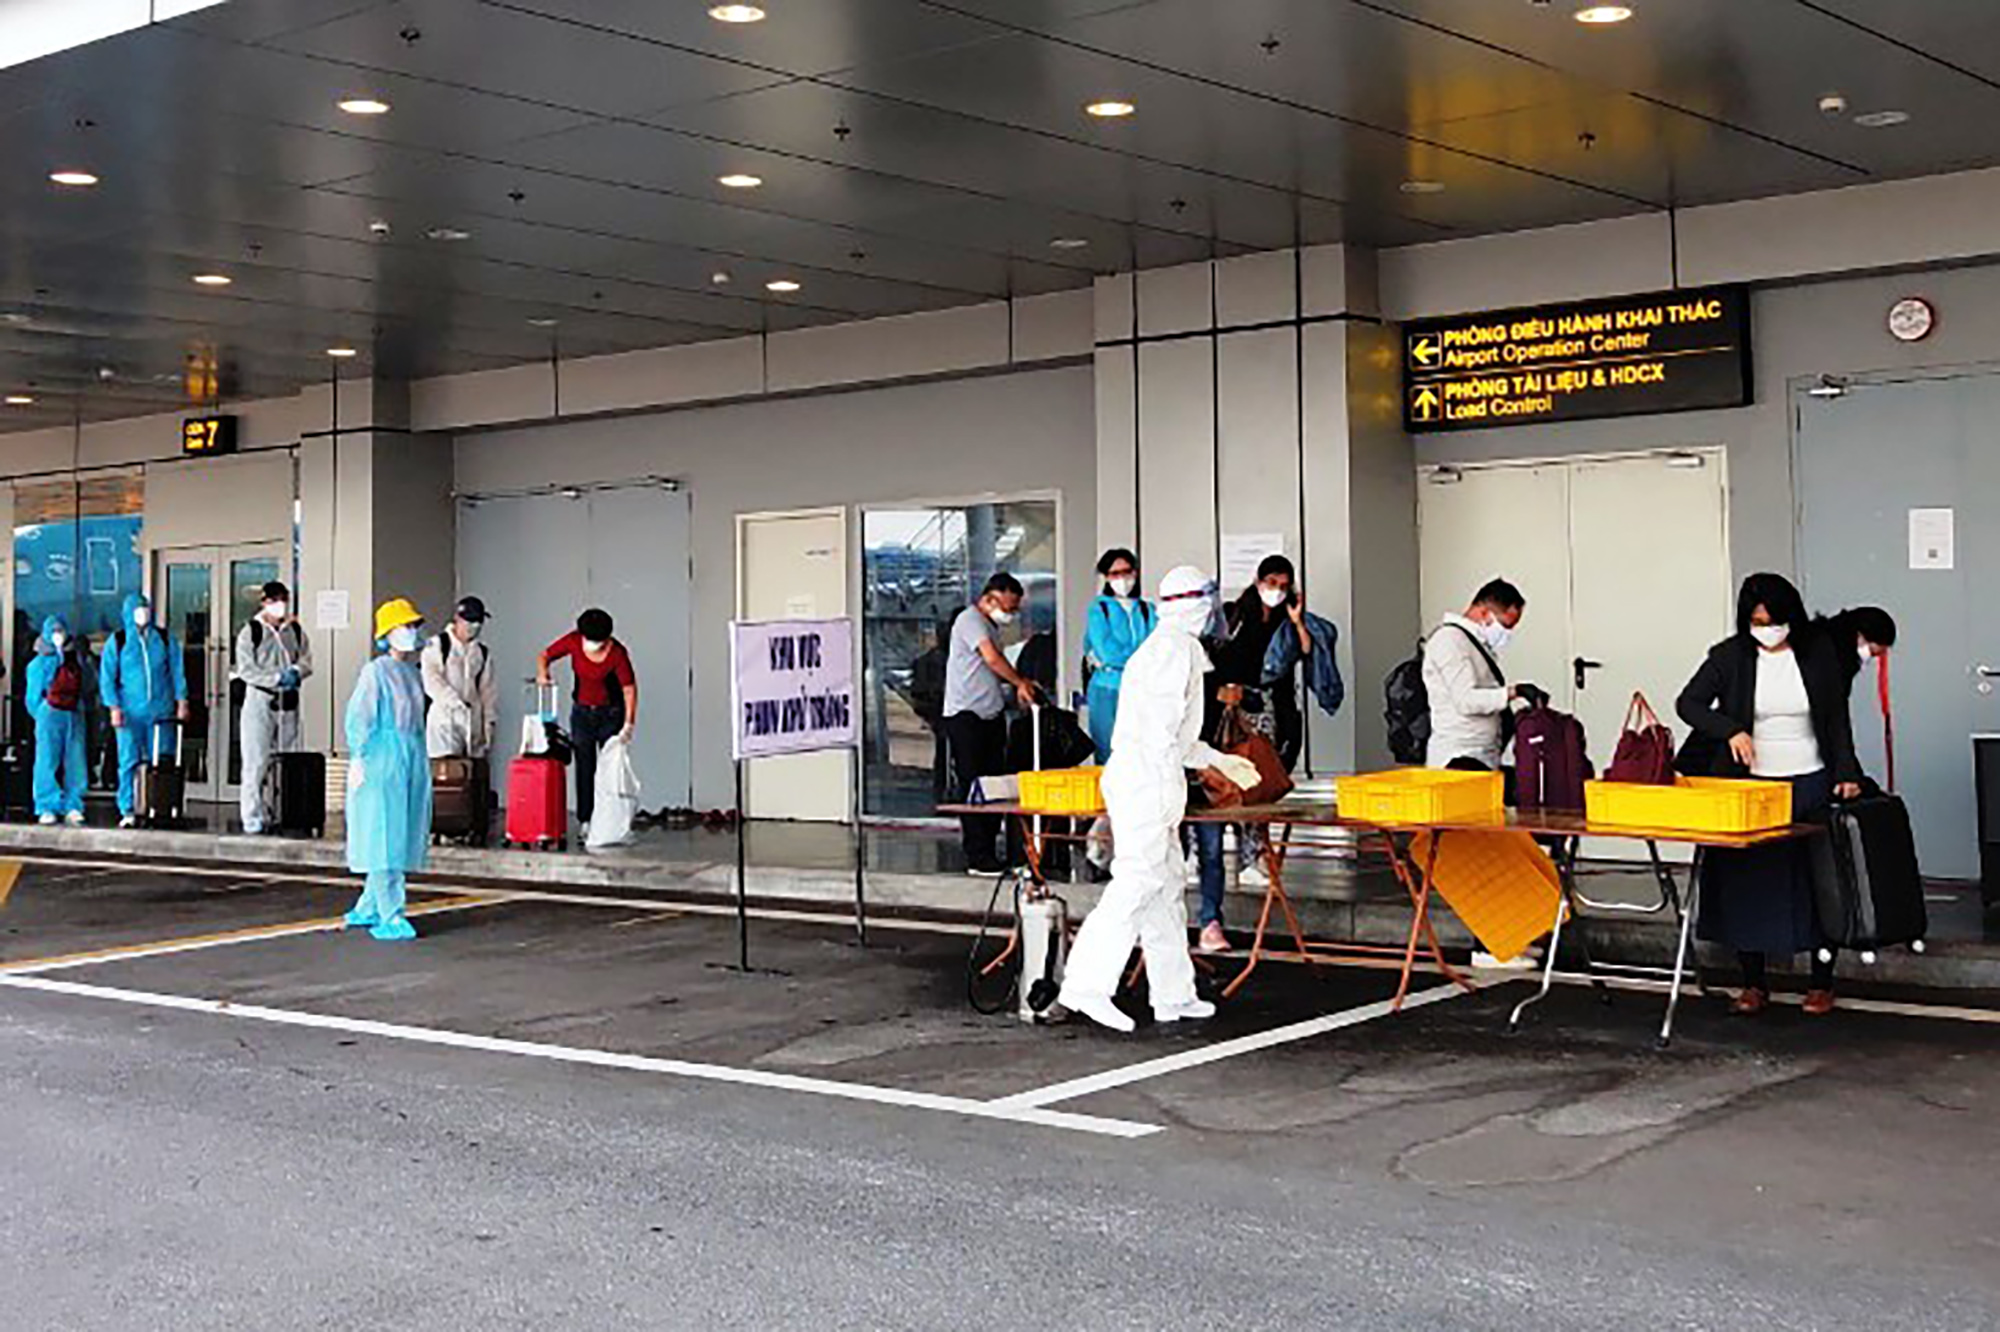  Hành khách làm thủ tục kiểm tra y tế và khai báo hàng không tại Sân bay quốc tế Vân Đồn. Ảnh: Đỗ Phương